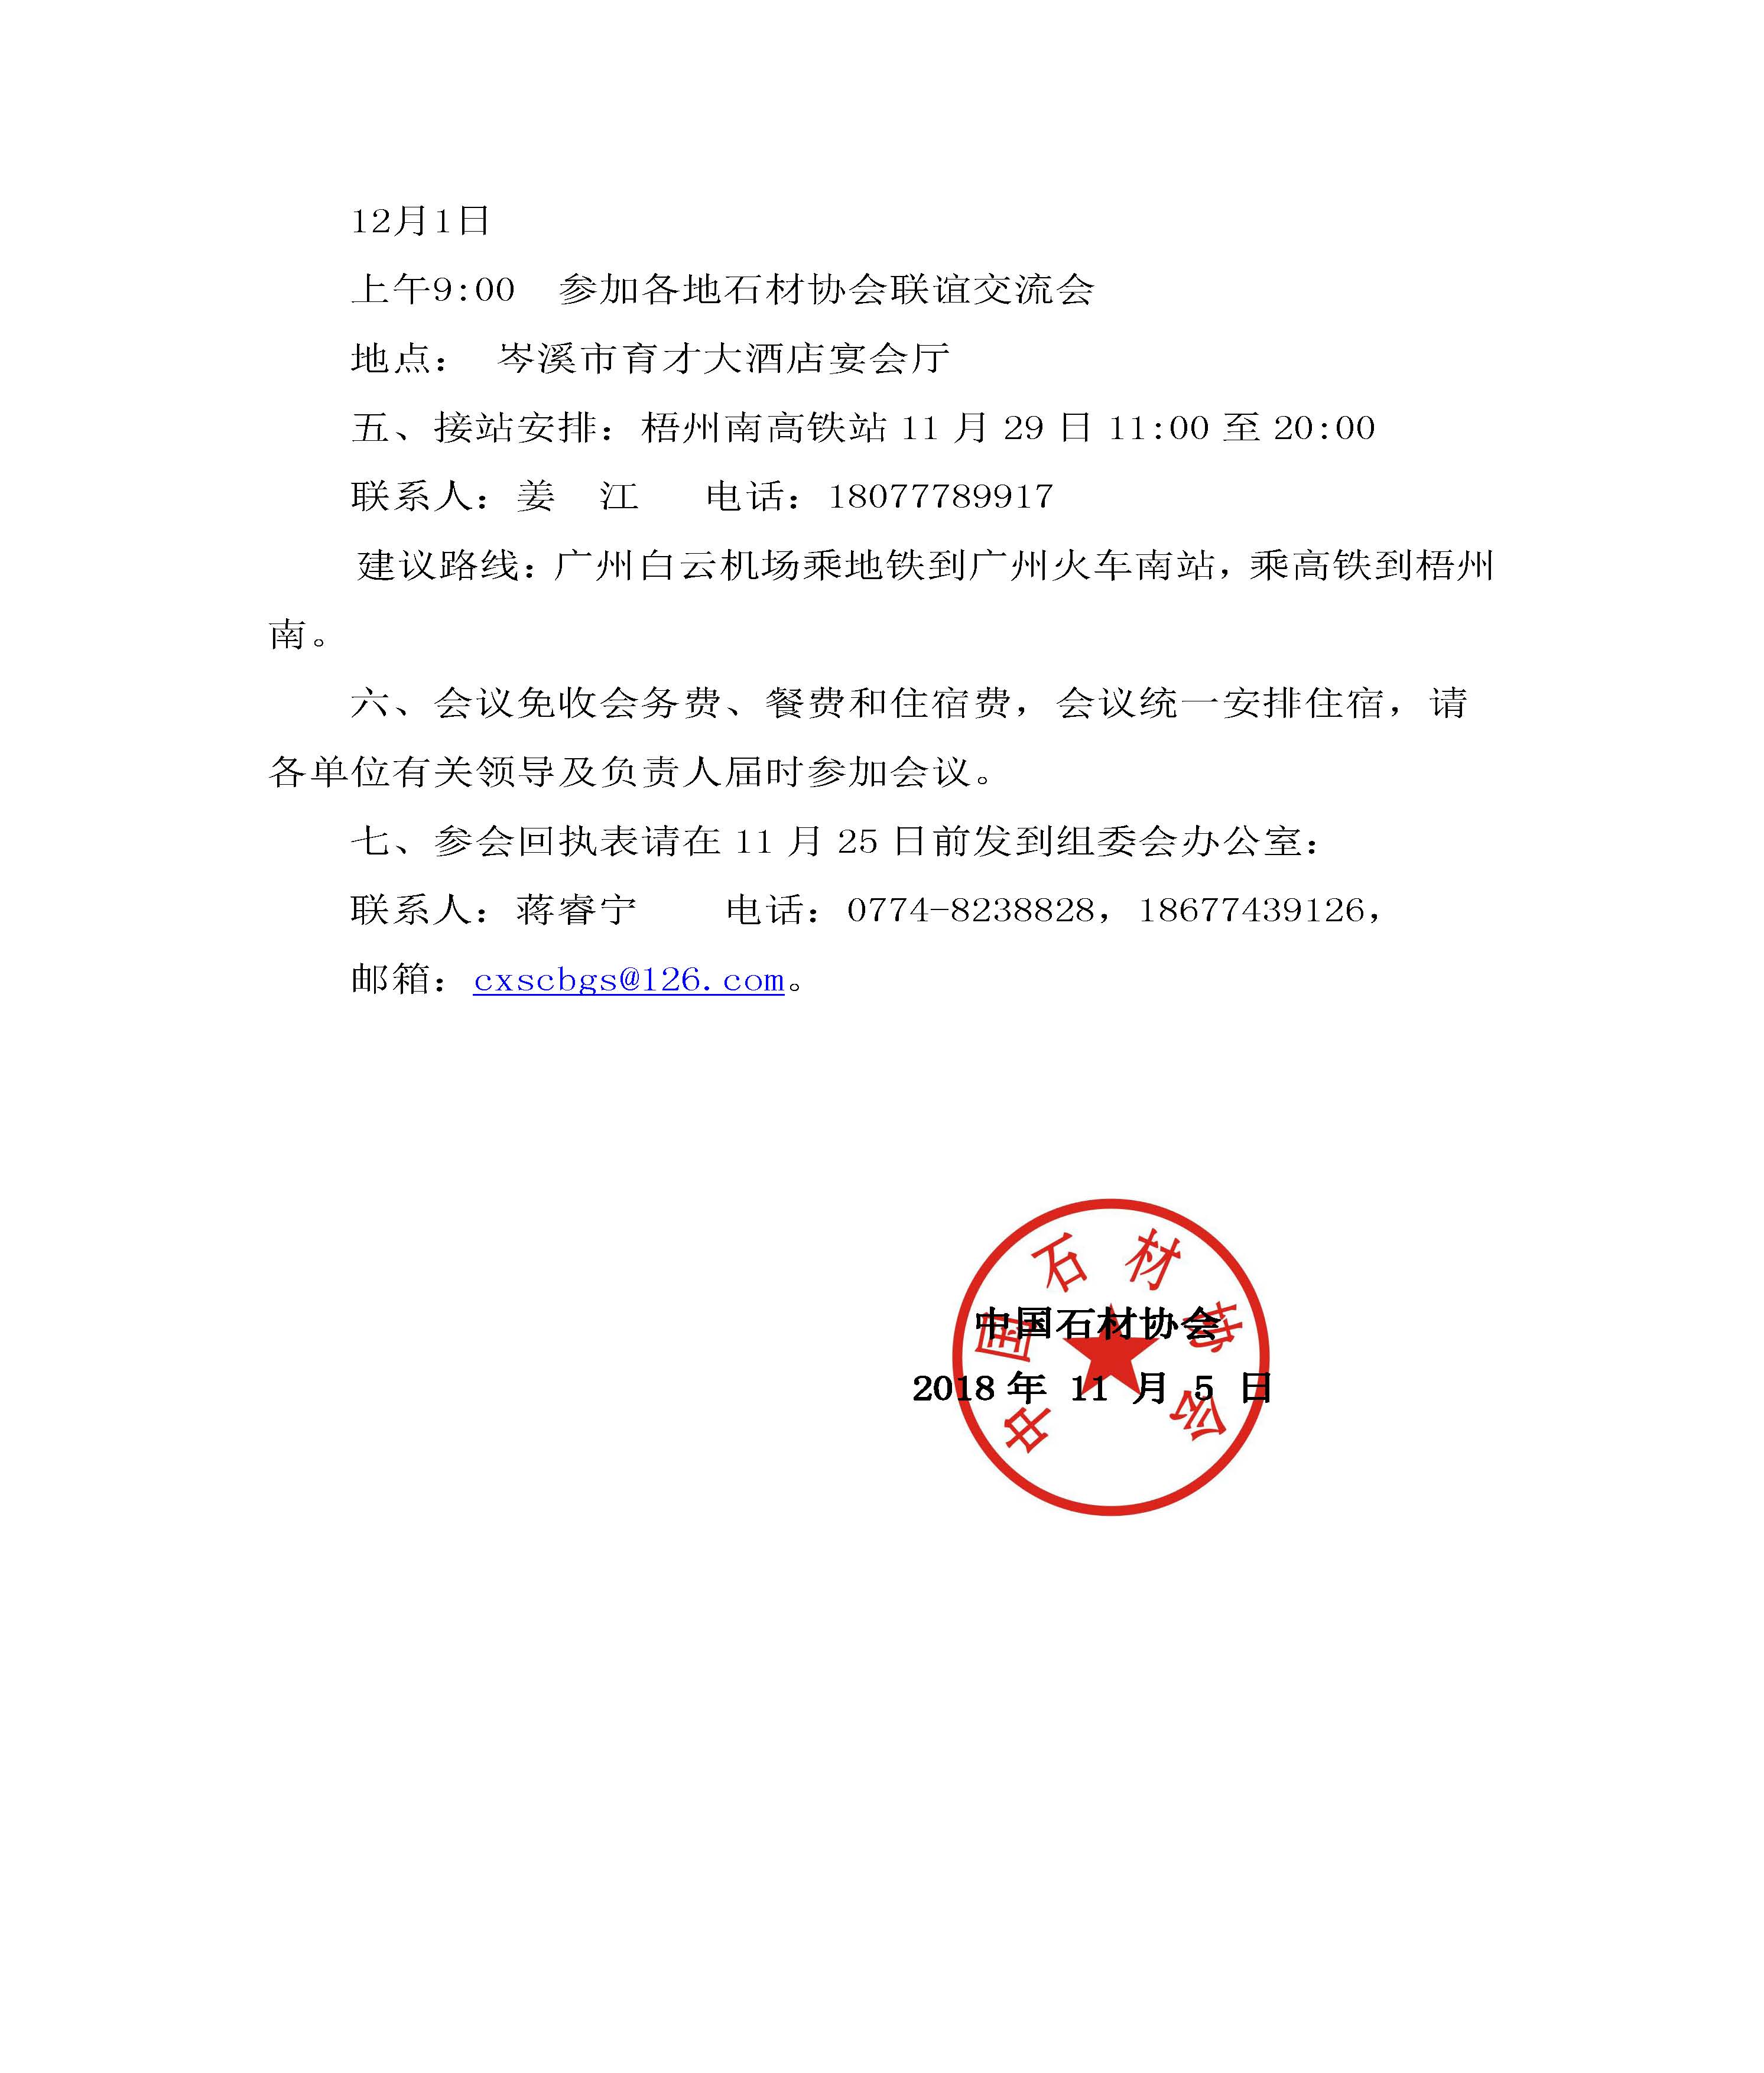 中国石材协会关于举办绿色矿山主题论坛的通知